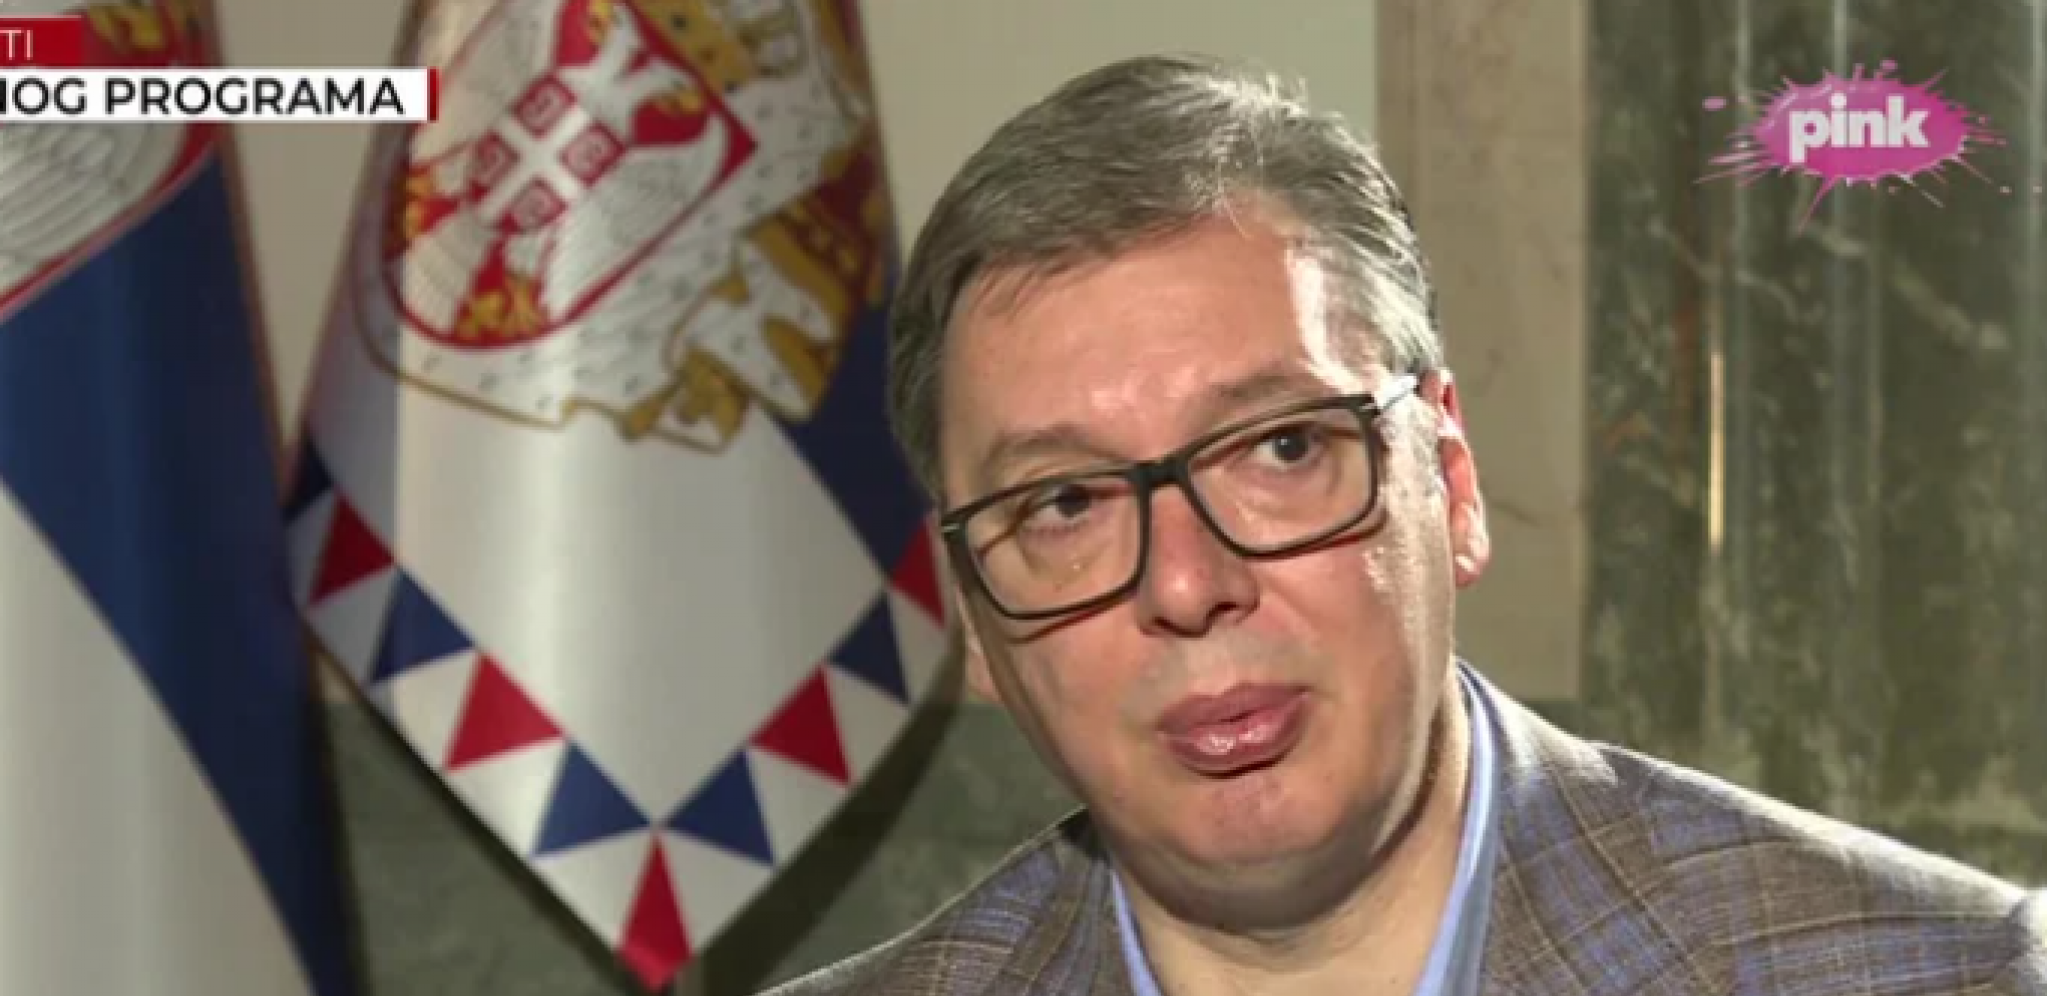 "NEĆE BITI NIKAKVIH MAJDANA!" Vučić žestoko odgovorio opoziciji koja bi nasilno da dođe na vlast